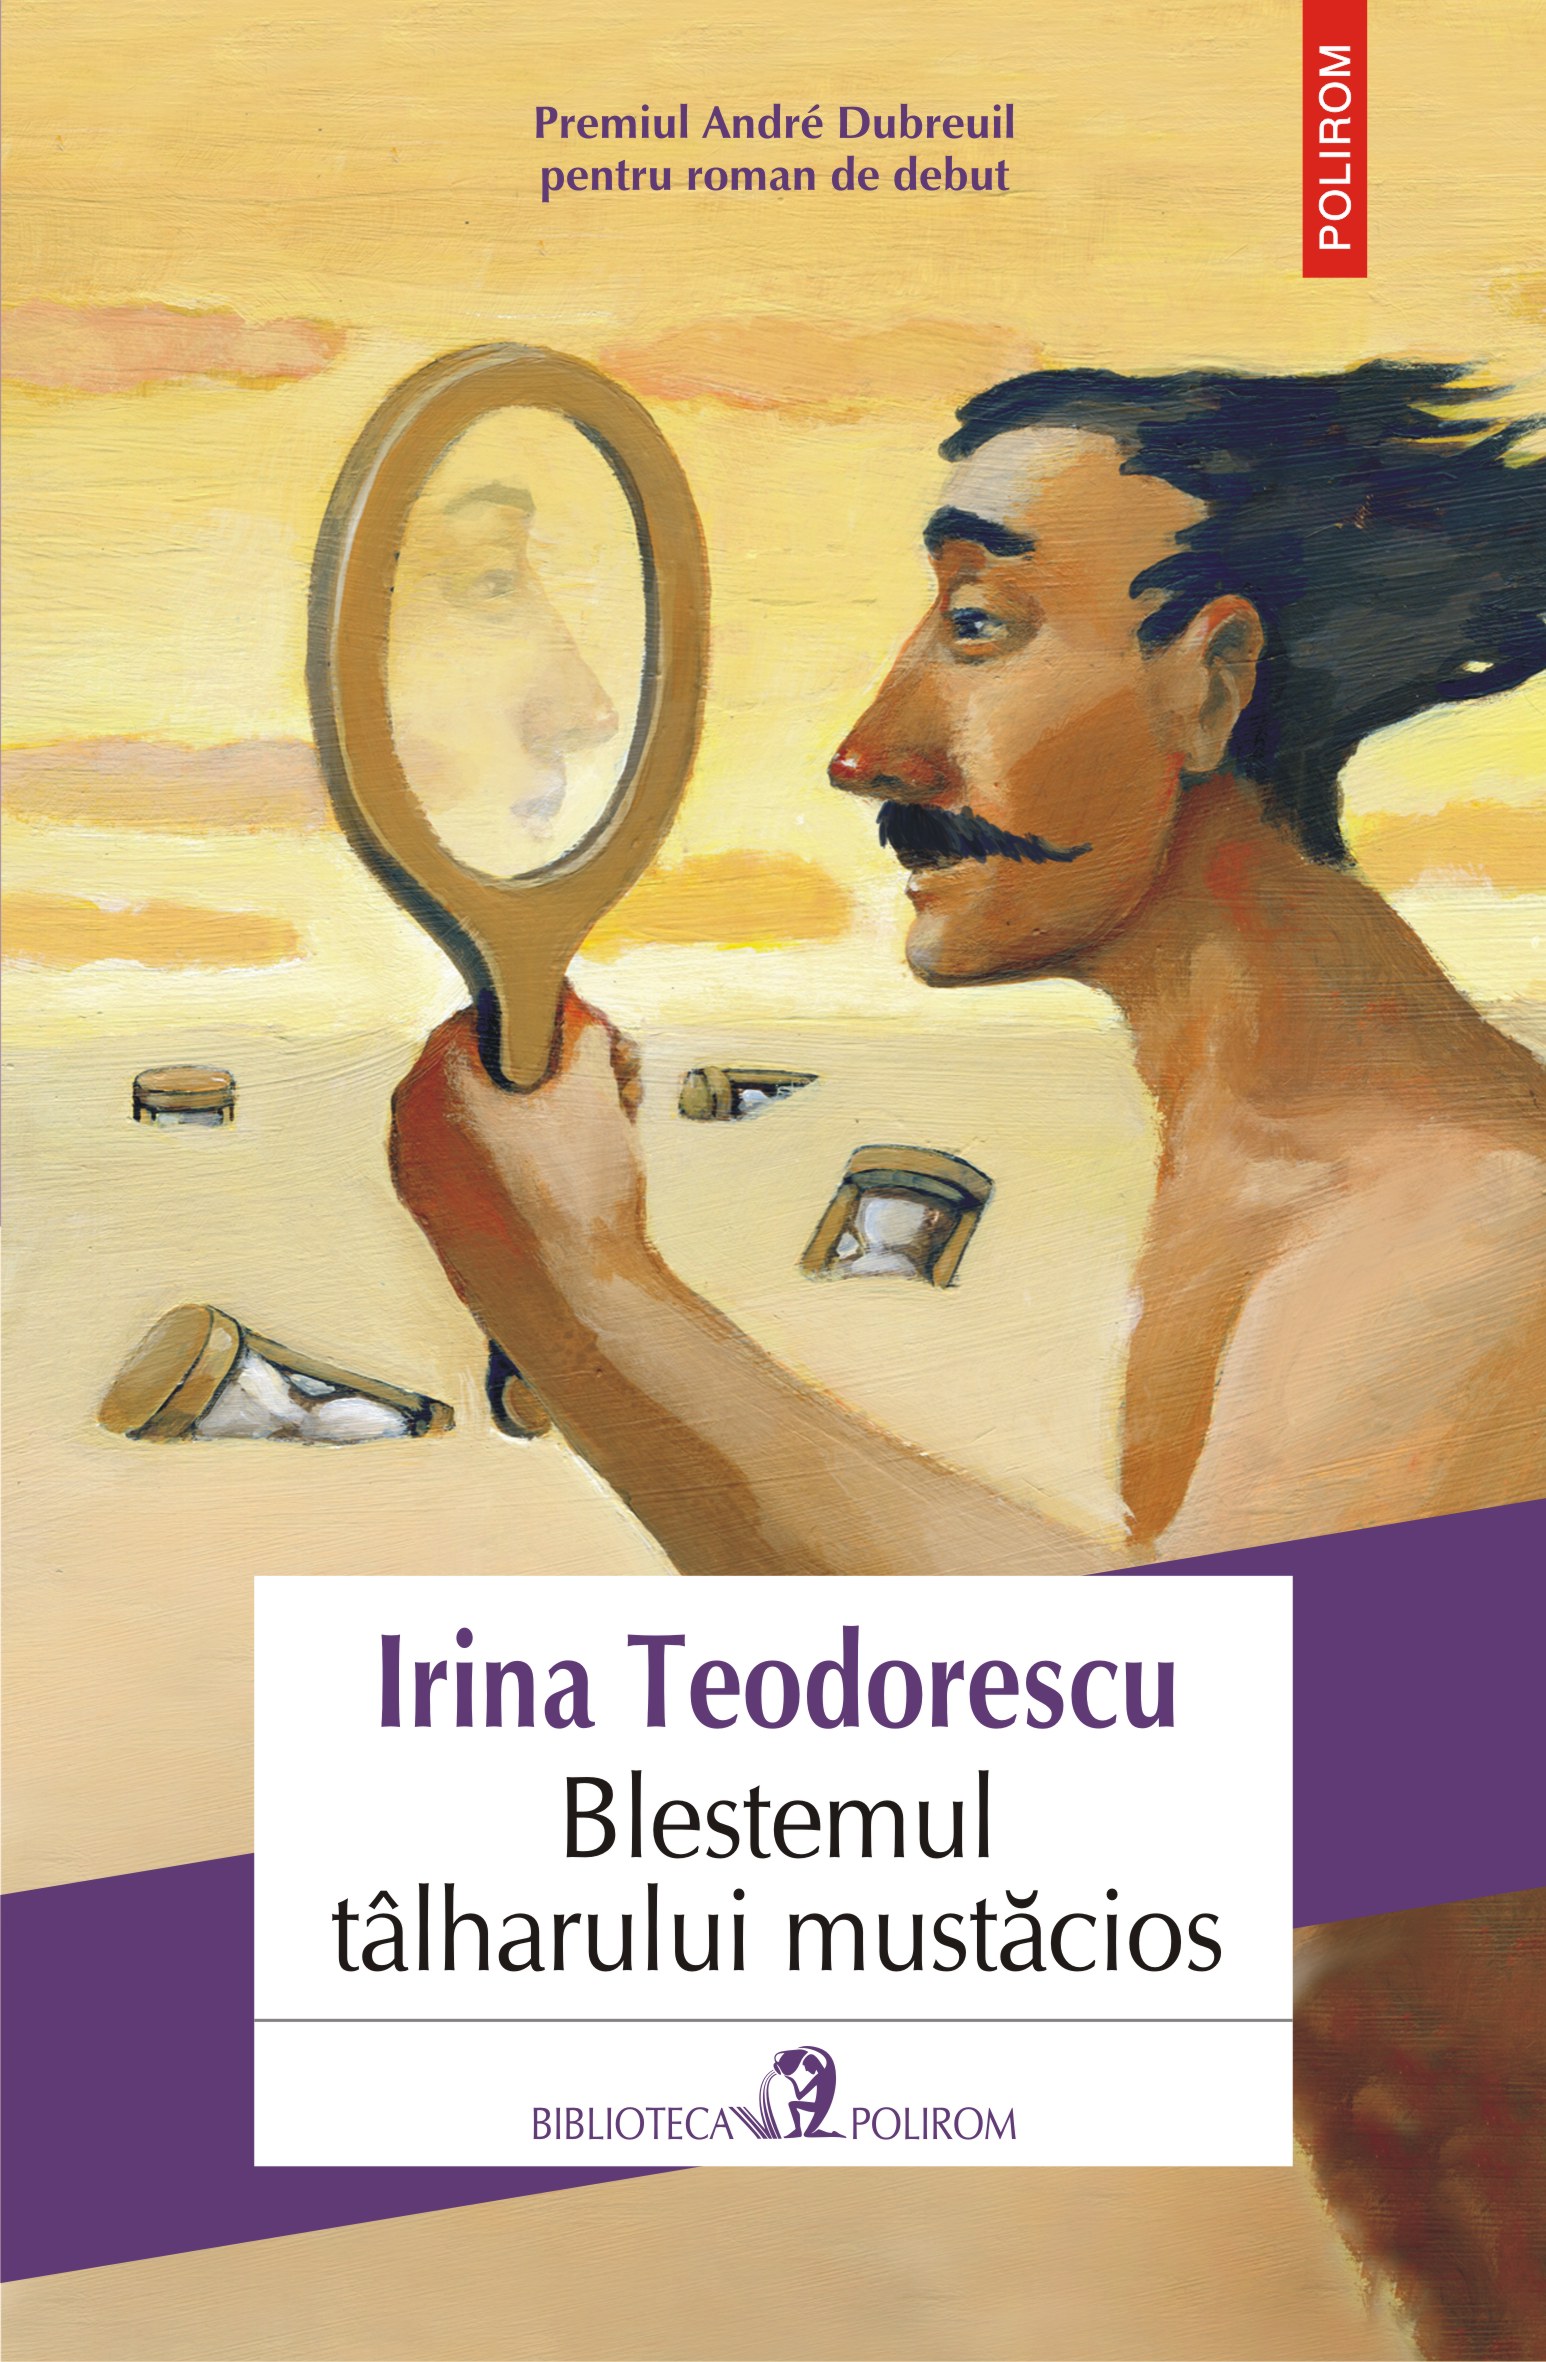 eBook Blestemul talharului mustacios - Irina Teodorescu